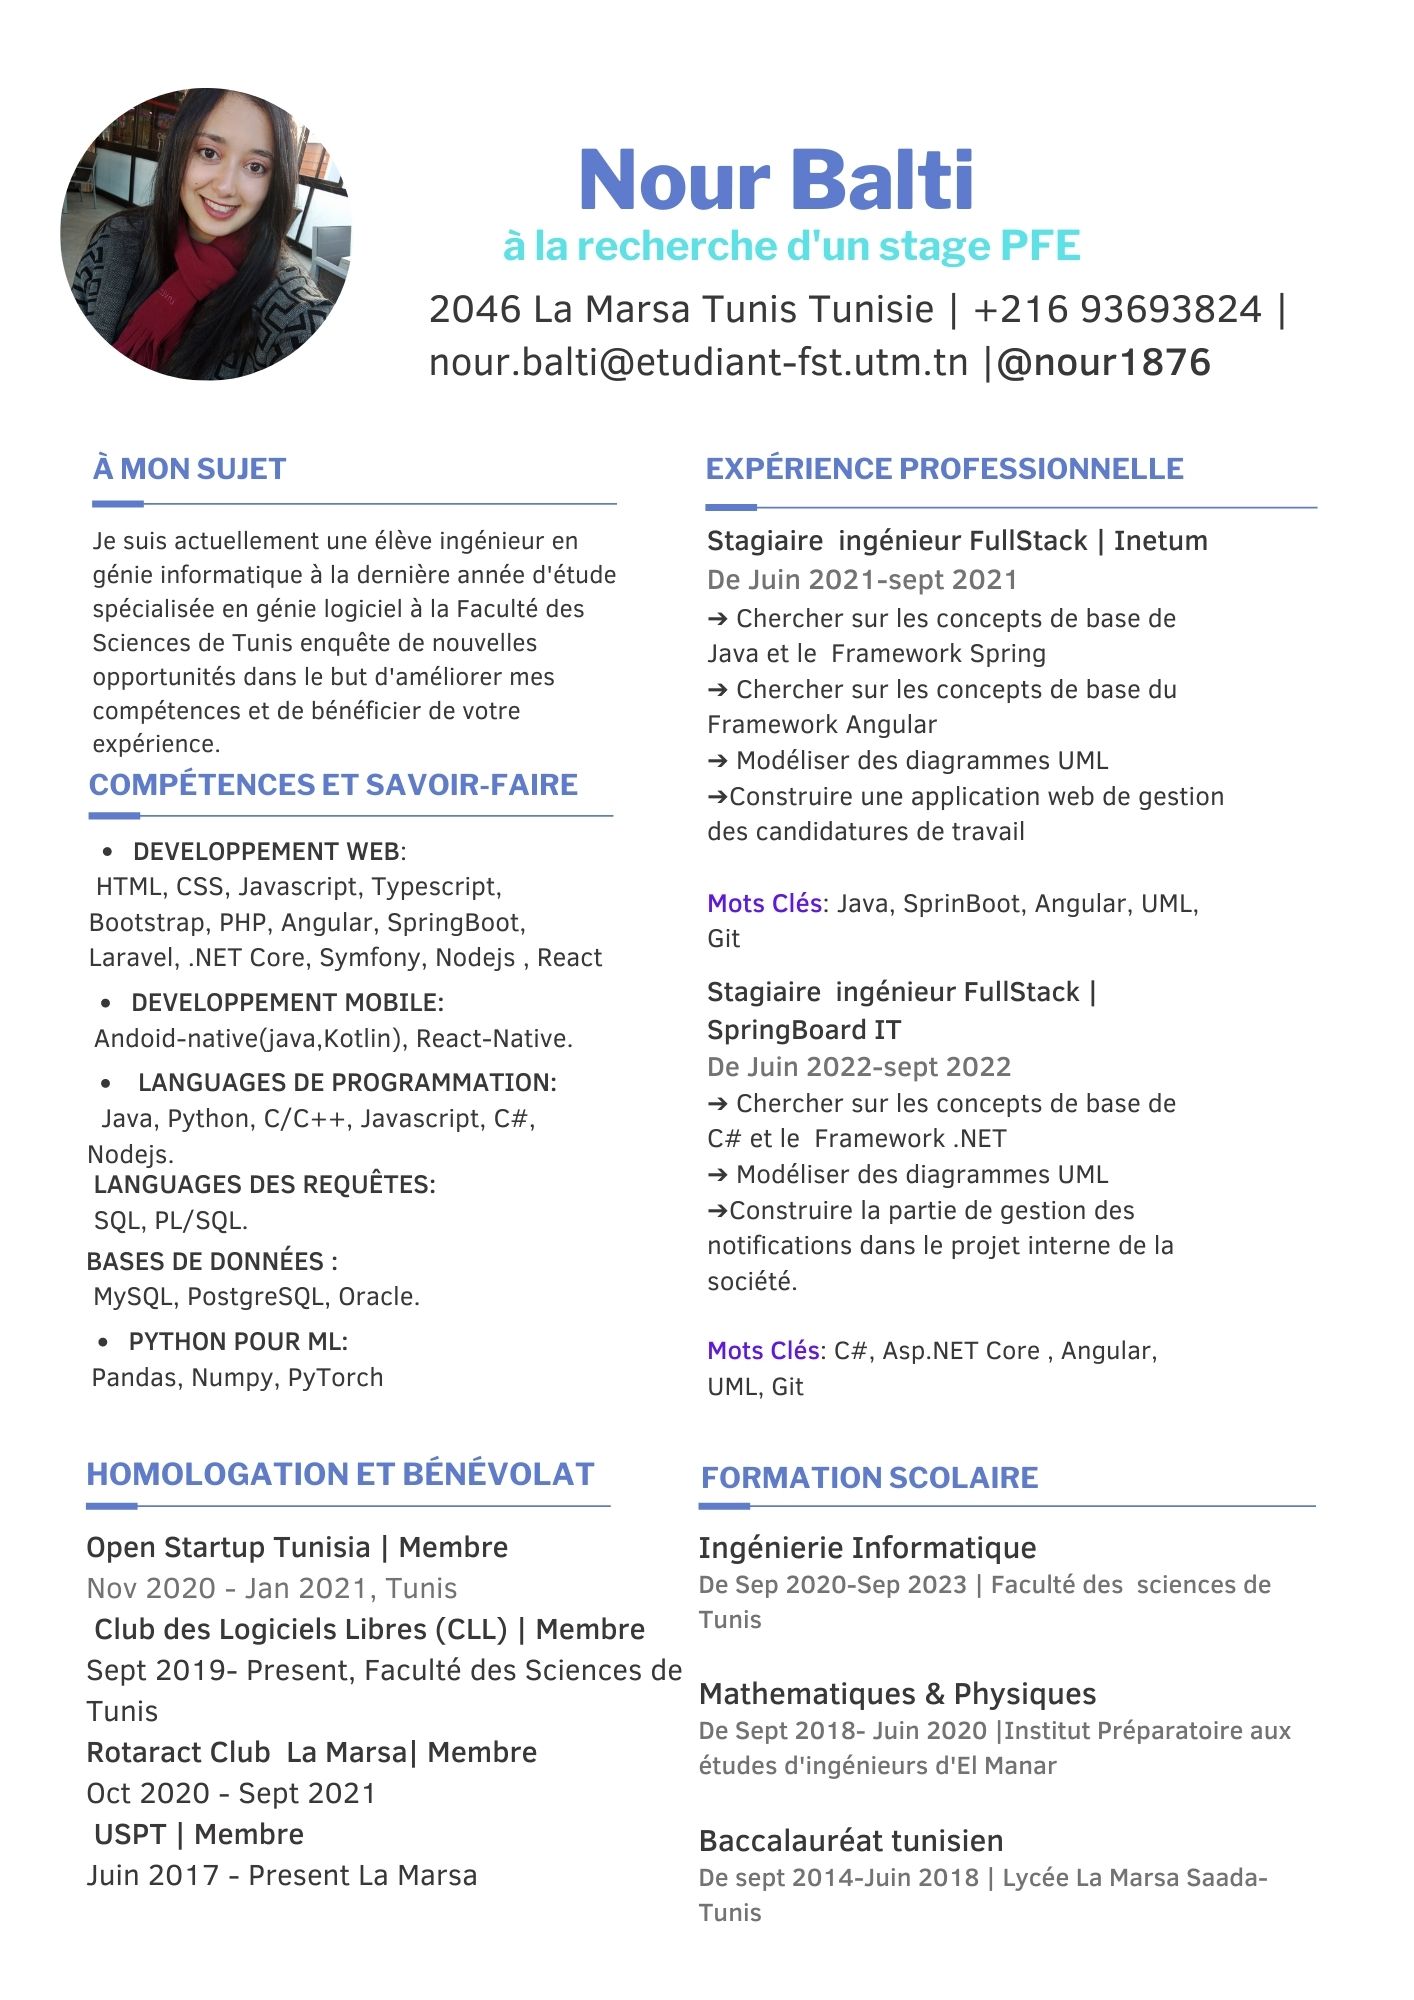 À MON SUJET

 

Je suis actuellement une élève ingénieur en
génie informatique à la dernière année d'étude
spécialisée en génie logiciel à la Faculté des
Sciences de Tunis enquête de nouvelles
opportunités dans le but d'améliorer mes
compétences et de bénéficier de votre
expérience.

COMPÉTENCES ET SAVOIR-FAIRE

 

DEVELOPPEMENT WEB:

HTML, CSS, Javascript, Typescript,
Bootstrap, PHP, Angular, SpringBoot,
Laravel, .NET Core, Symfony, Nodejs , React
« DEVELOPPEMENT MOBILE:
Andoid-native(java,Kotlin), React-Native.

« LANGUAGES DE PROGRAMMATION:
Java, Python, C/C++, Javascript, C#,

Nodejs. .
LANGUAGES DES REQUETES:

SQL, PL/SQL.
BASES DE DONNEES :
MySQL, PostgreSQL, Oracle.

« PYTHON POUR ML:
Pandas, Numpy, PyTorch

HOMOLOGATION ET BÉNÉVOLAT

 

Open Startup Tunisia | Membre

Nov 2020 - Jan 2021, Tunis

Club des Logiciels Libres (CLL) | Membre
Sept 2019- Present, Faculté des Sciences de
Tunis

Rotaract Club La Marsa| Membre

Oct 2020 - Sept 2021

USPT | Membre

Juin 2017 - Present La Marsa

Nour Balti

2046 La Marsa Tunis Tunisie | +216 93693824 |
nour.balti@etudiant-fst.utm.tn |@nour1876

EXPERIENCE PROFESSIONNELLE
Stagiaire ingénieur FullStack | Inetum
De Juin 2021-sept 2021

> Chercher sur les concepts de base de
Java et le Framework Spring

=> Chercher sur les concepts de base du
Framework Angular

> Modéliser des diagrammes UML
>Construire une application web de gestion
des candidatures de travail

Mots Clés: Java, SprinBoot, Angular, UML,
Git

Stagiaire ingénieur FullStack |
SpringBoard IT

De Juin 2022-sept 2022

= Chercher sur les concepts de base de
C# et le Framework .NET

- Modéliser des diagrammes UML
>Construire la partie de gestion des
notifications dans le projet interne de la
société.

Mots Clés: C#, Asp.NET Core , Angular,
UML, Git

FORMATION SCOLAIRE

 

Ingénierie Informatique
De Sep 2020-Sep 2023 | Faculté des sciences de
Tunis

Mathematiques & Physiques
De Sept 2018- Juin 2020 [Institut Préparatoire aux
études d'ingénieurs d'El Manar

Baccalauréat tunisien
De sept 2014-Juin 2018 | Lycée La Marsa Saada-
Tunis